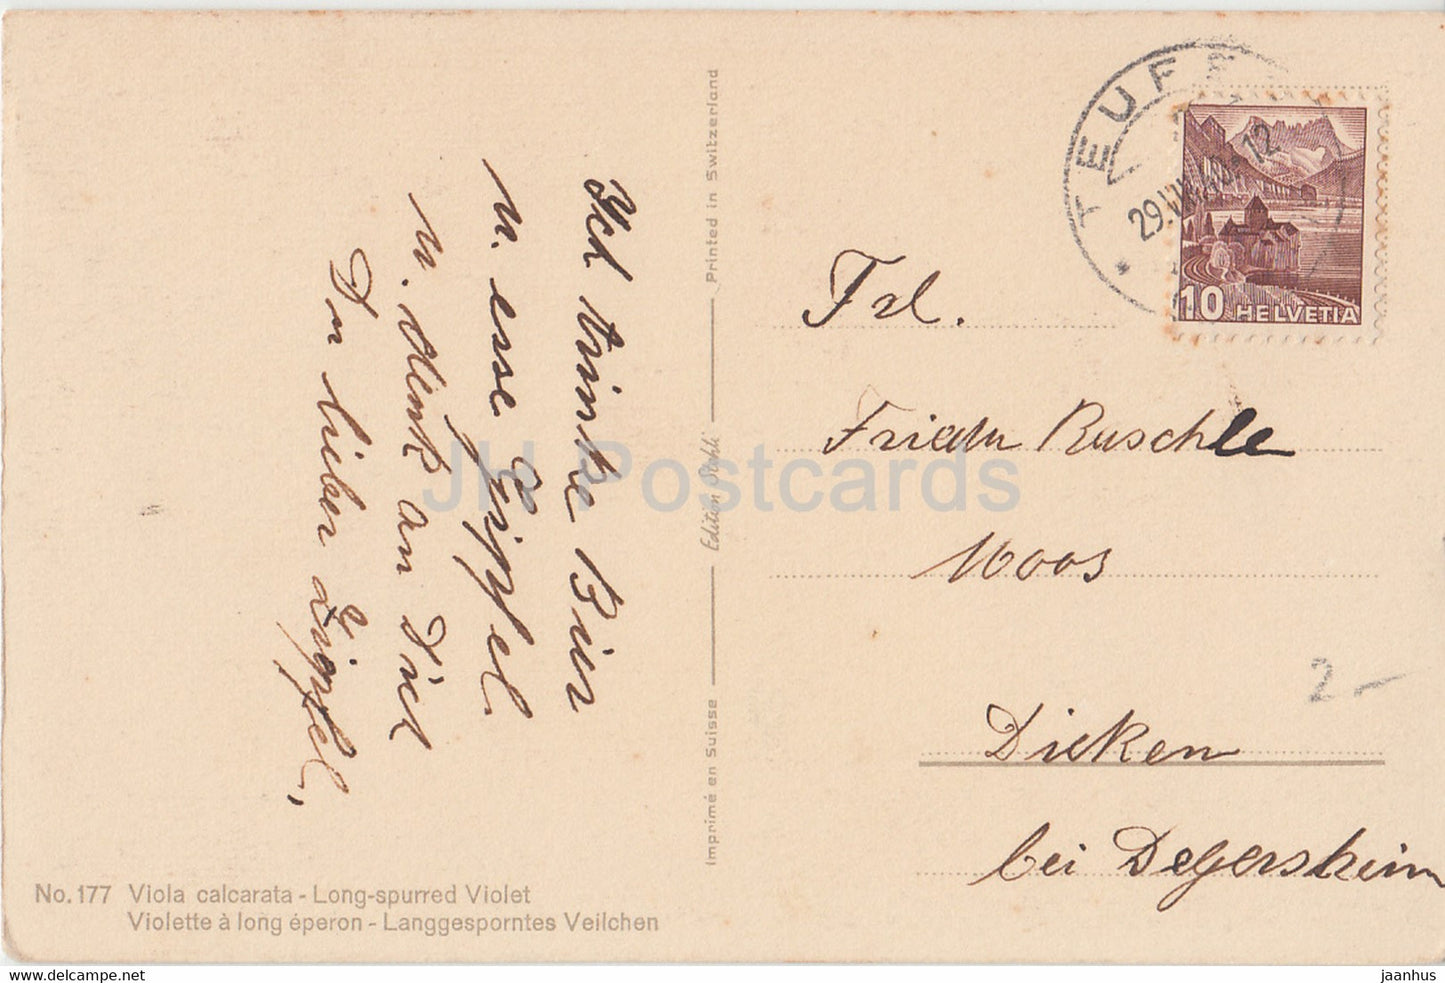 Viola Calcarata - Violette longue stimulée - Fleurs Langgesprontes Veilchen - 177 - carte postale ancienne - 1940 - Suisse - utilisé